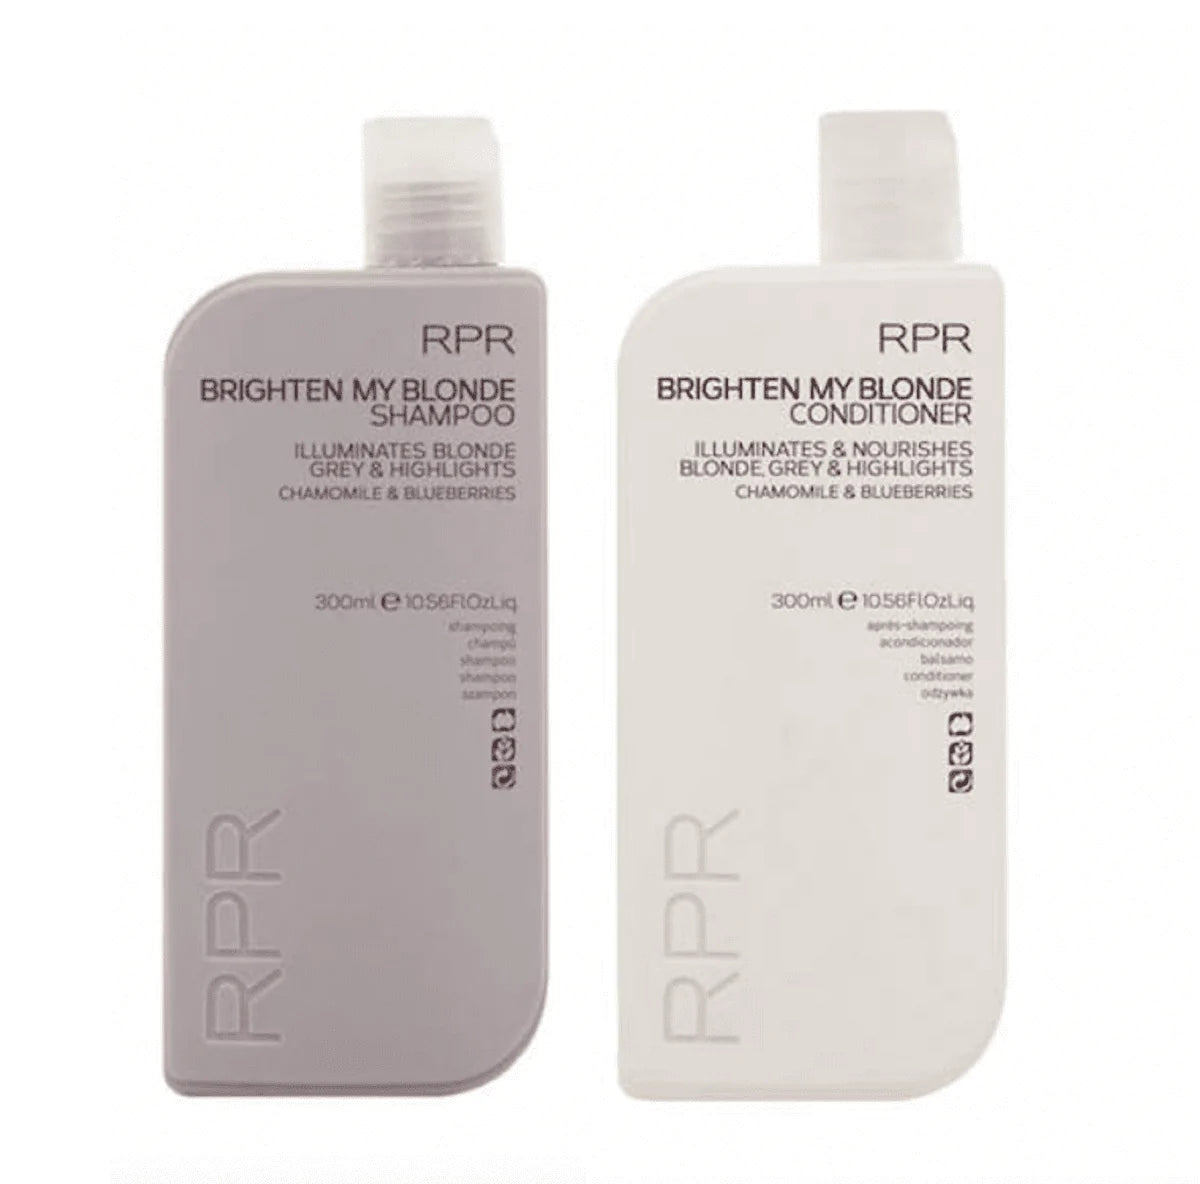 RPR Brighten My Blonde Shampoo and Conditioner 300ml Duo Bundle Salon Warehouse